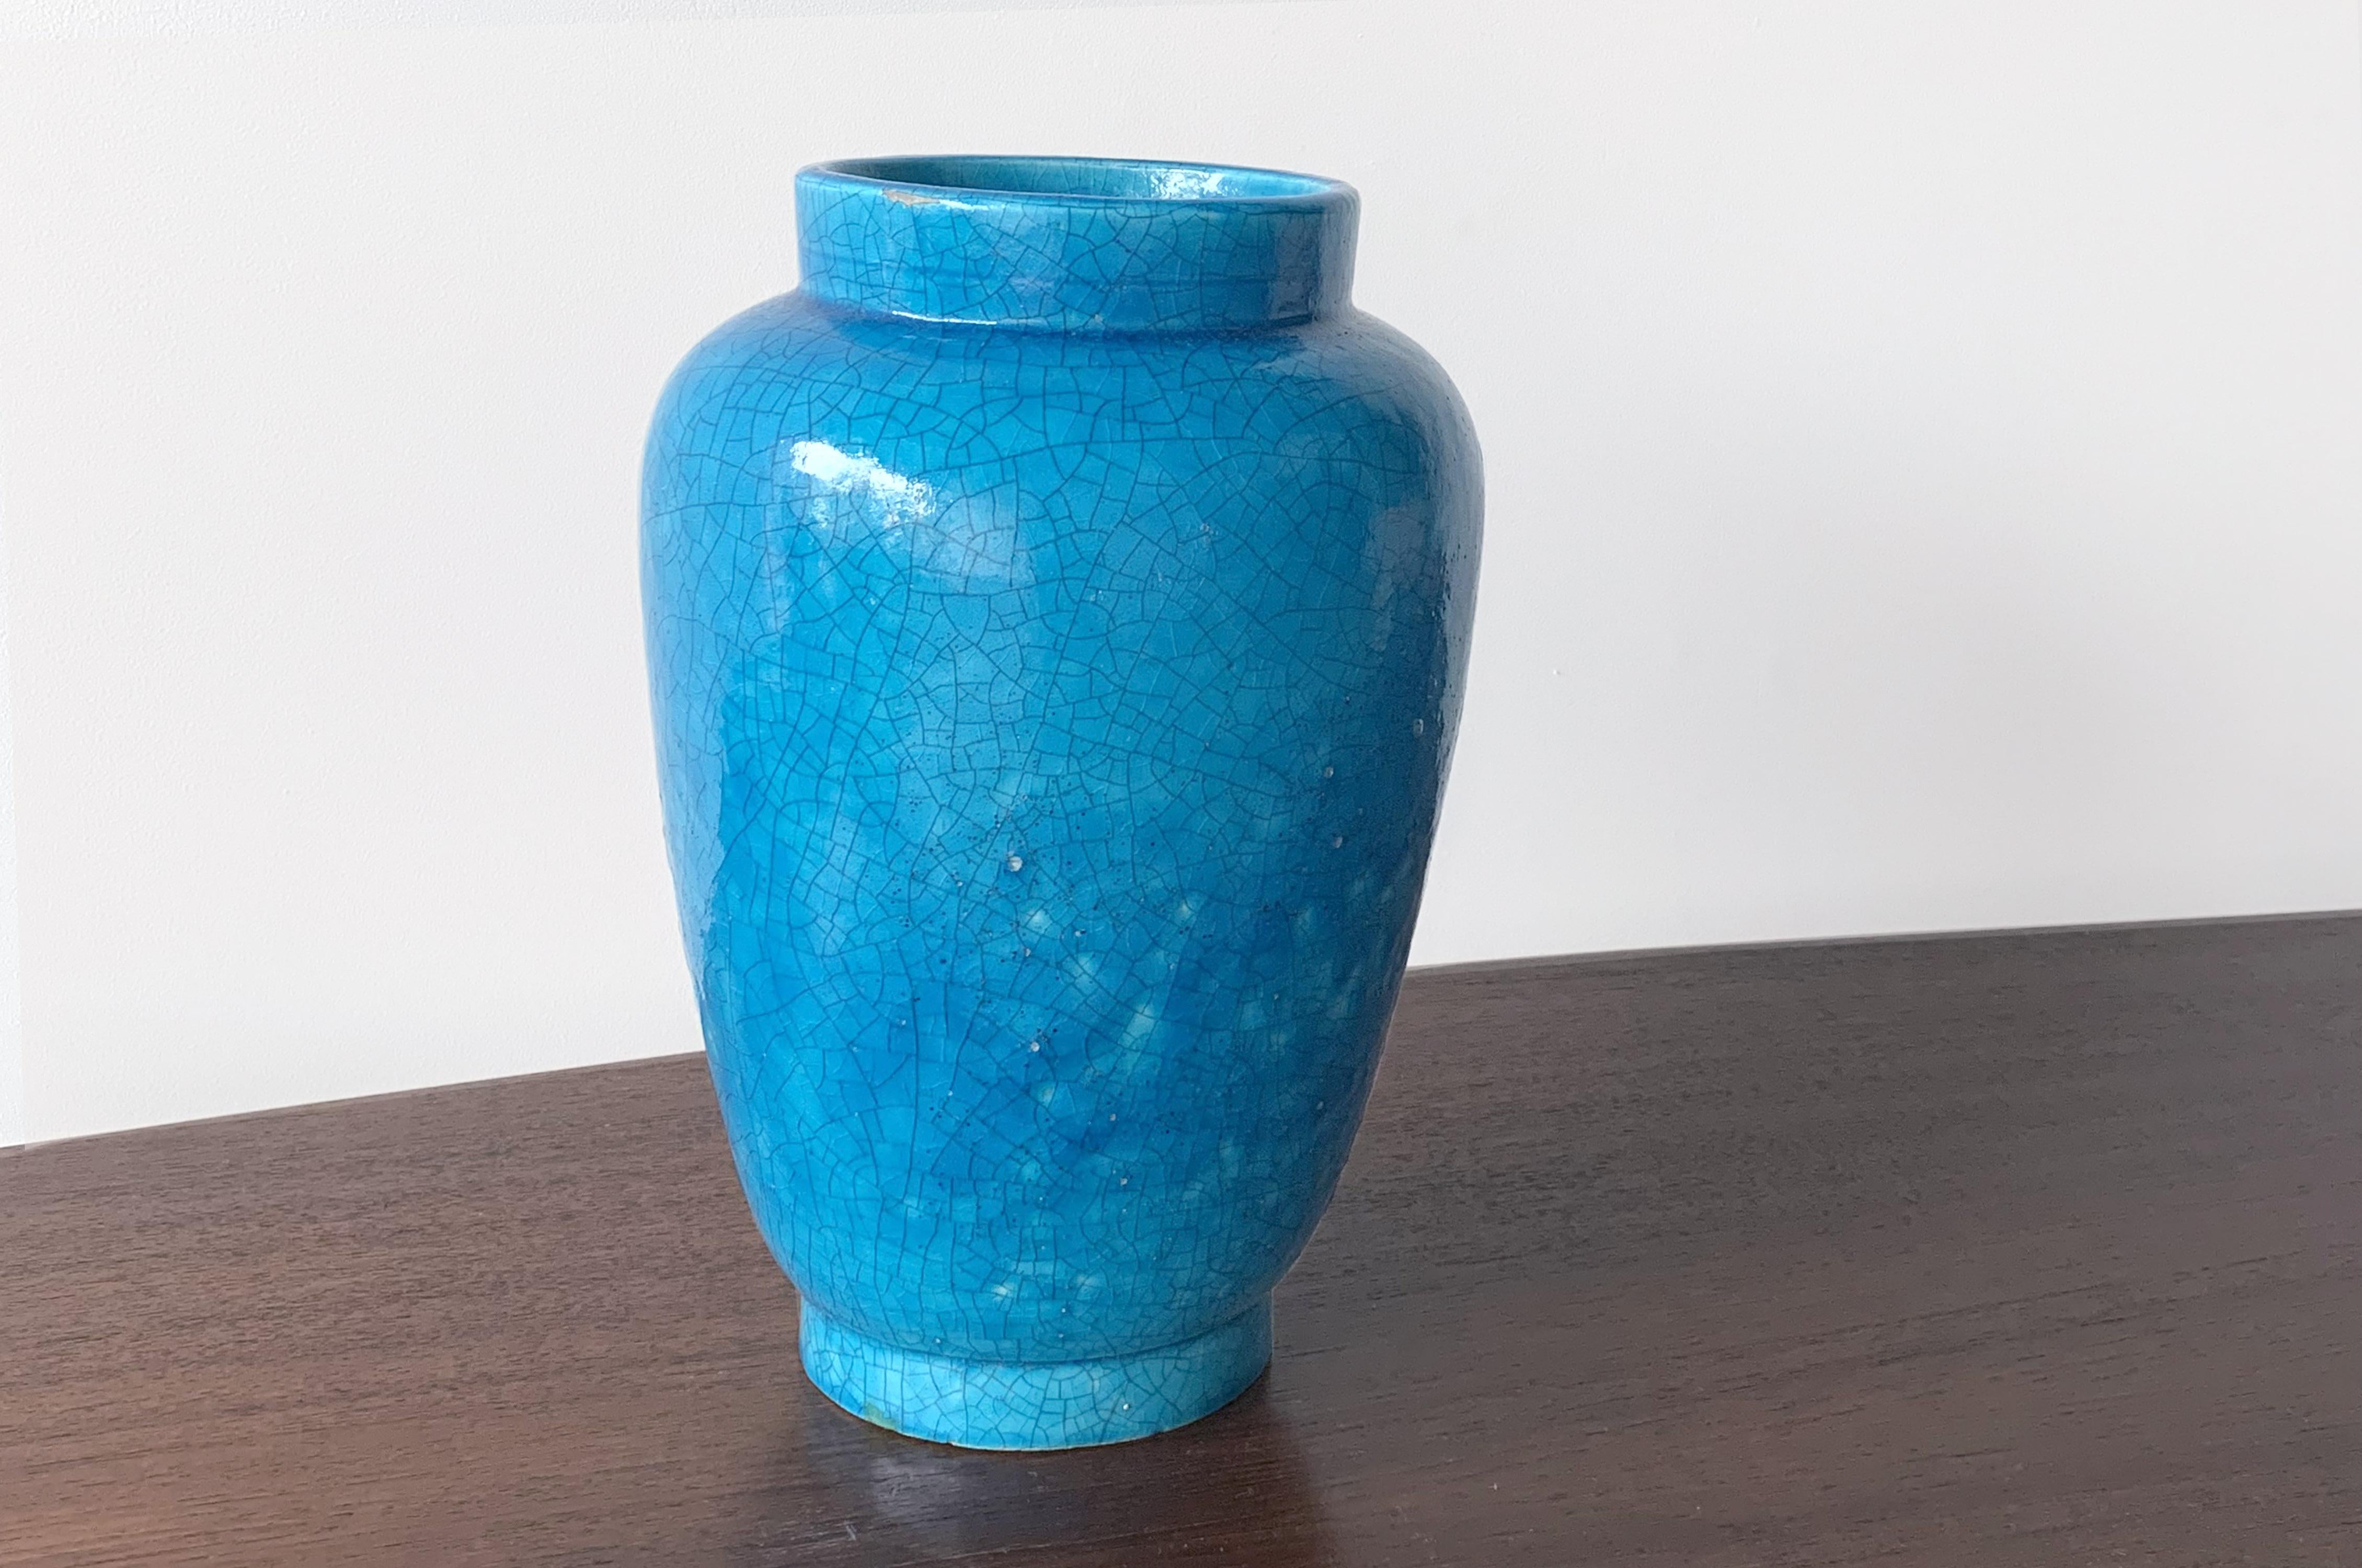 Turquoise crackle glaze ceramic vase.
Signed on base 'Lachenal'.